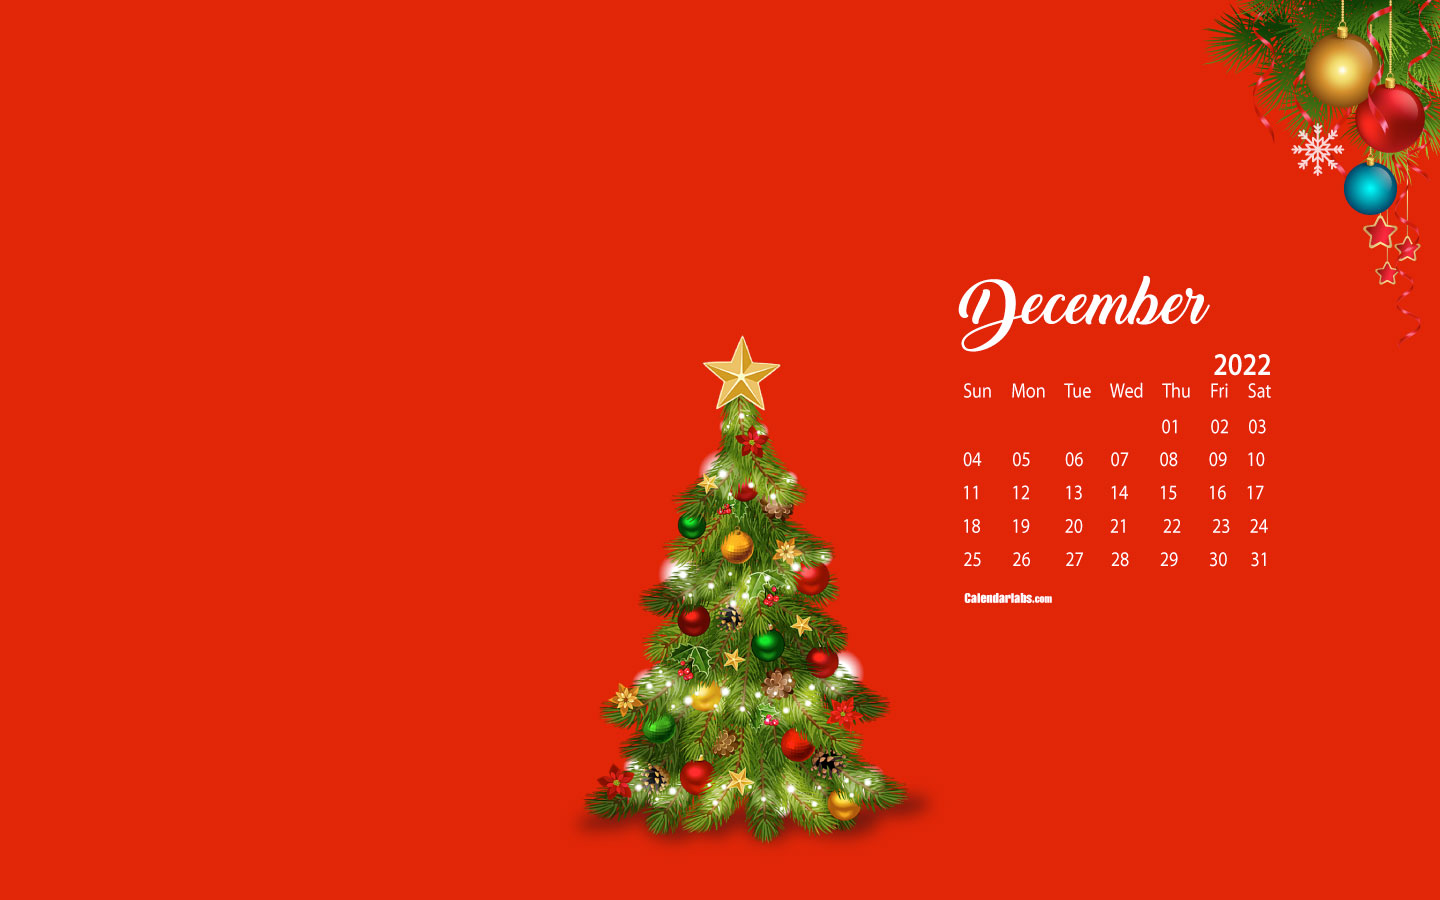 Nền hình máy tính tháng 12 năm 2022 từ CalendarLabs không chỉ đơn giản là lịch, mà còn là những tác phẩm nghệ thuật đẹp mắt, đưa bạn vào không gian Giáng sinh ấm áp. Hãy tải về để trang trí màn hình cho máy tính của bạn.